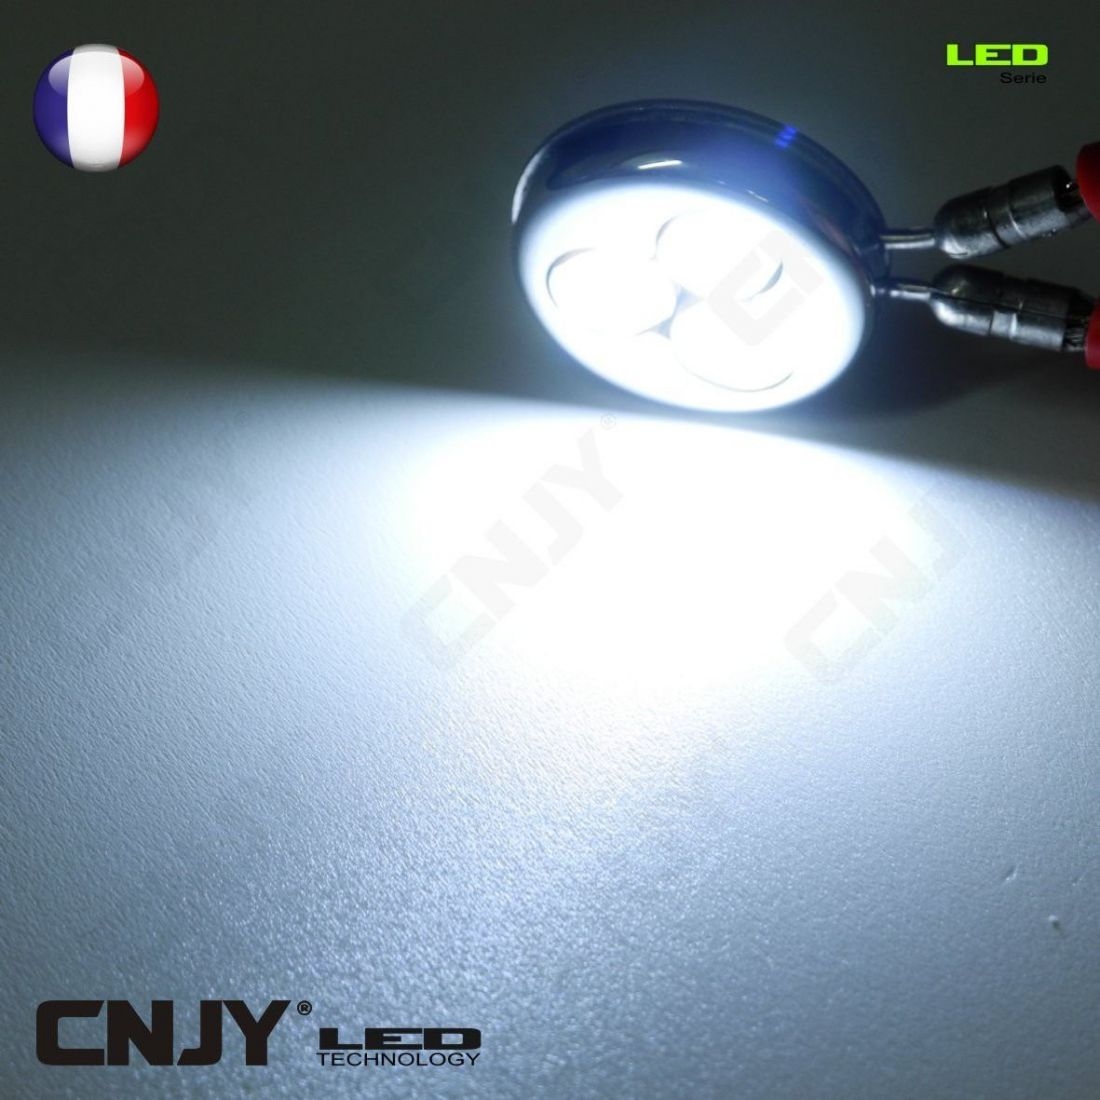 Ampoule LED G4 1.5W